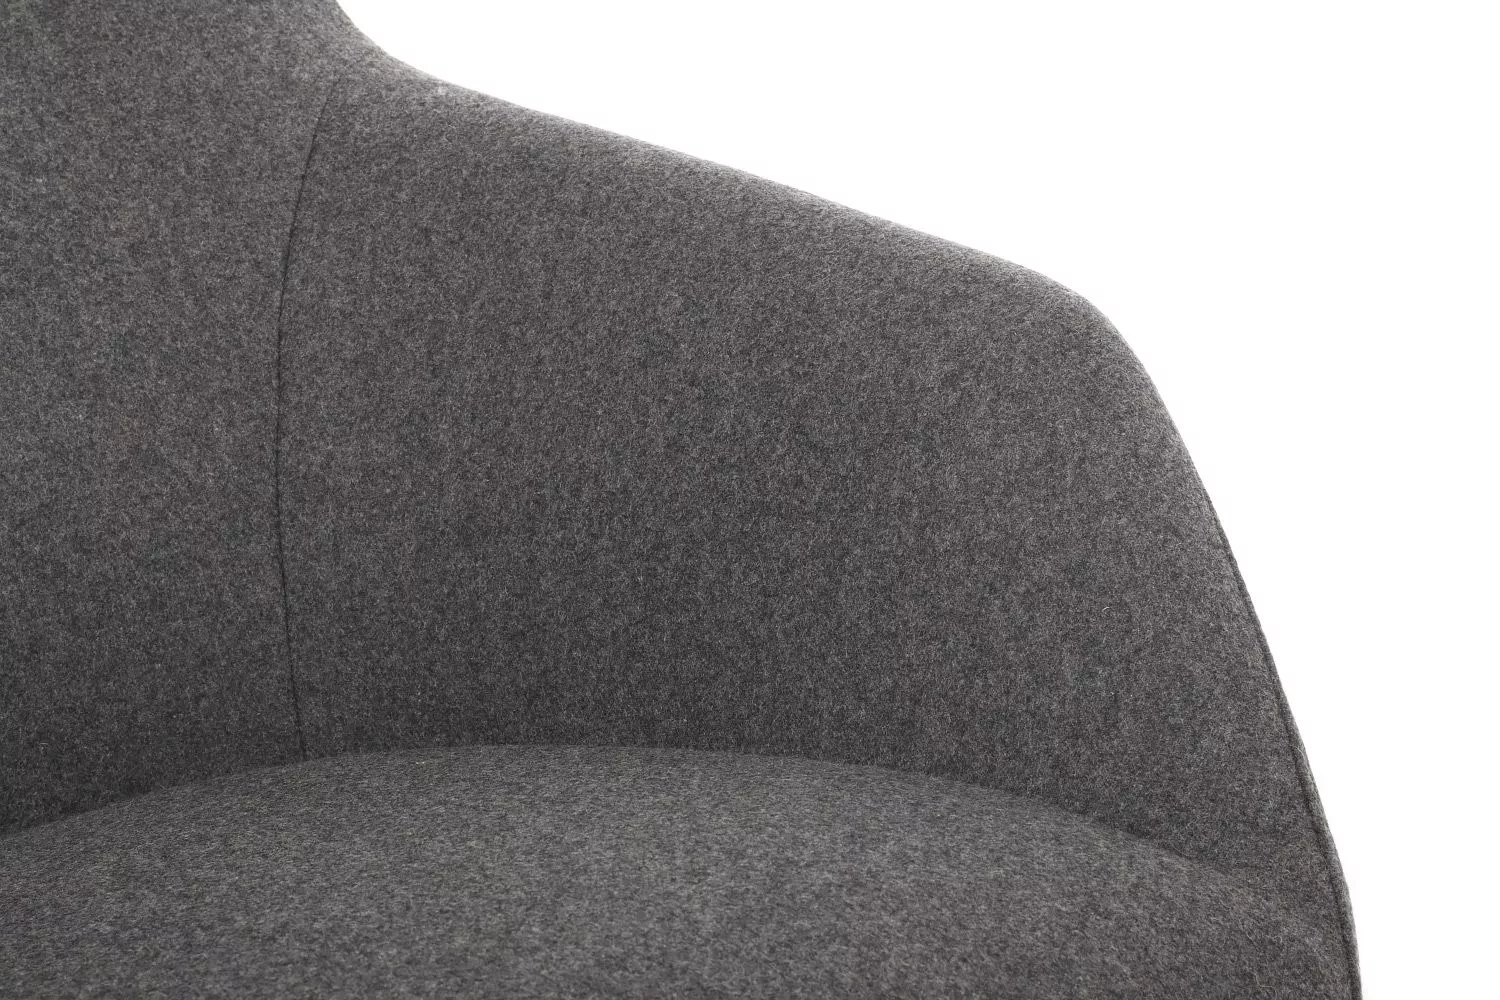 Кресло RIVA DESIGN Кресло Selin F1705 + оттоманка (кашемир) темно-серый